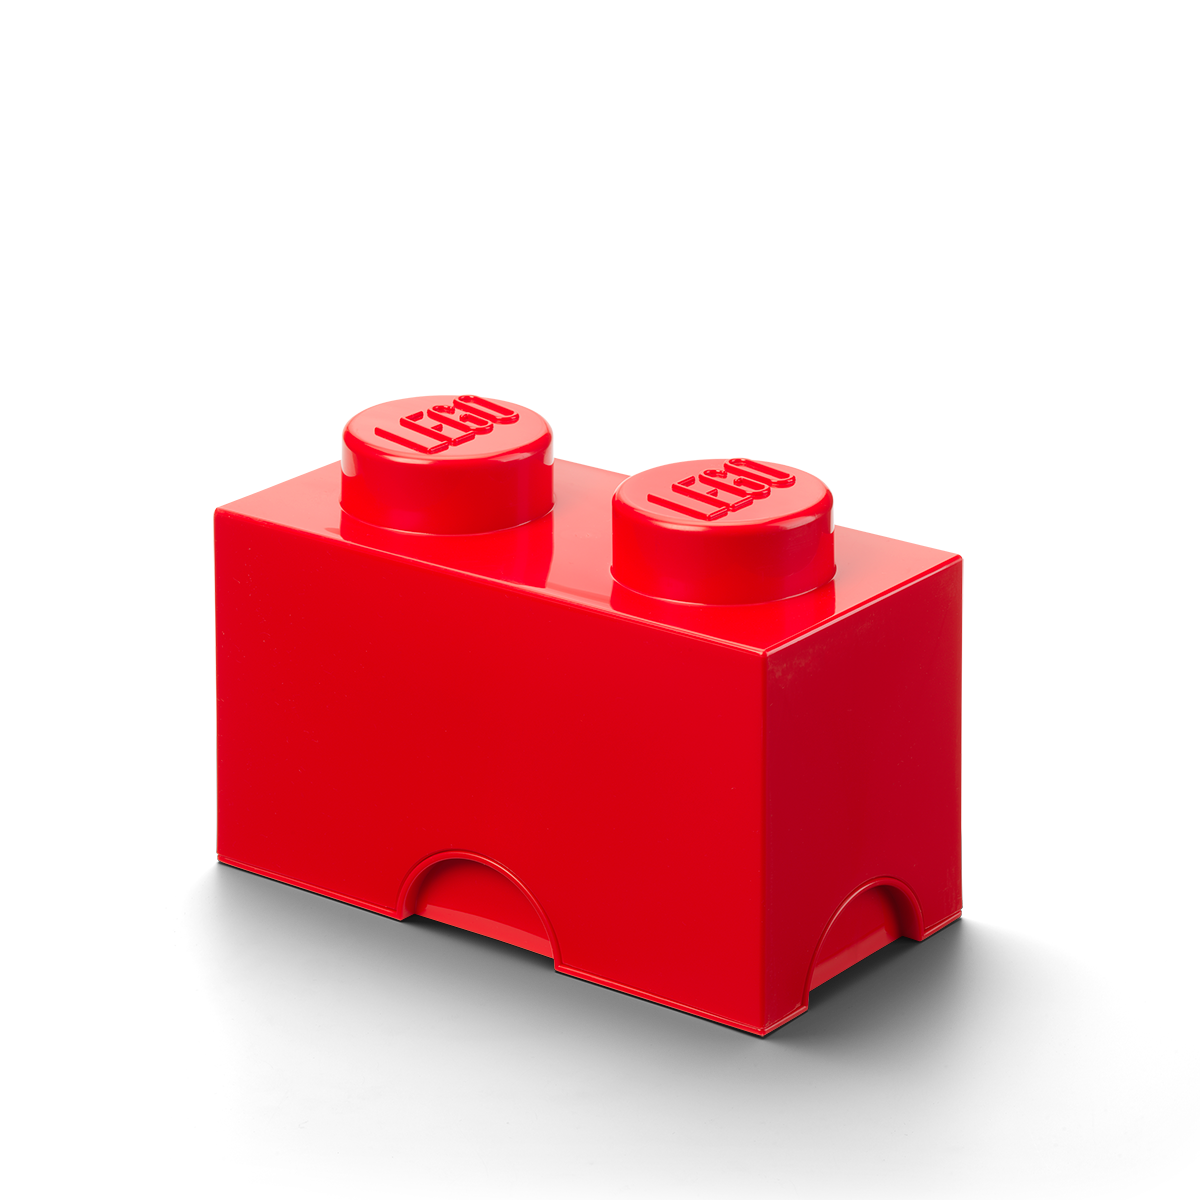 Contenedor Lego Brick 2